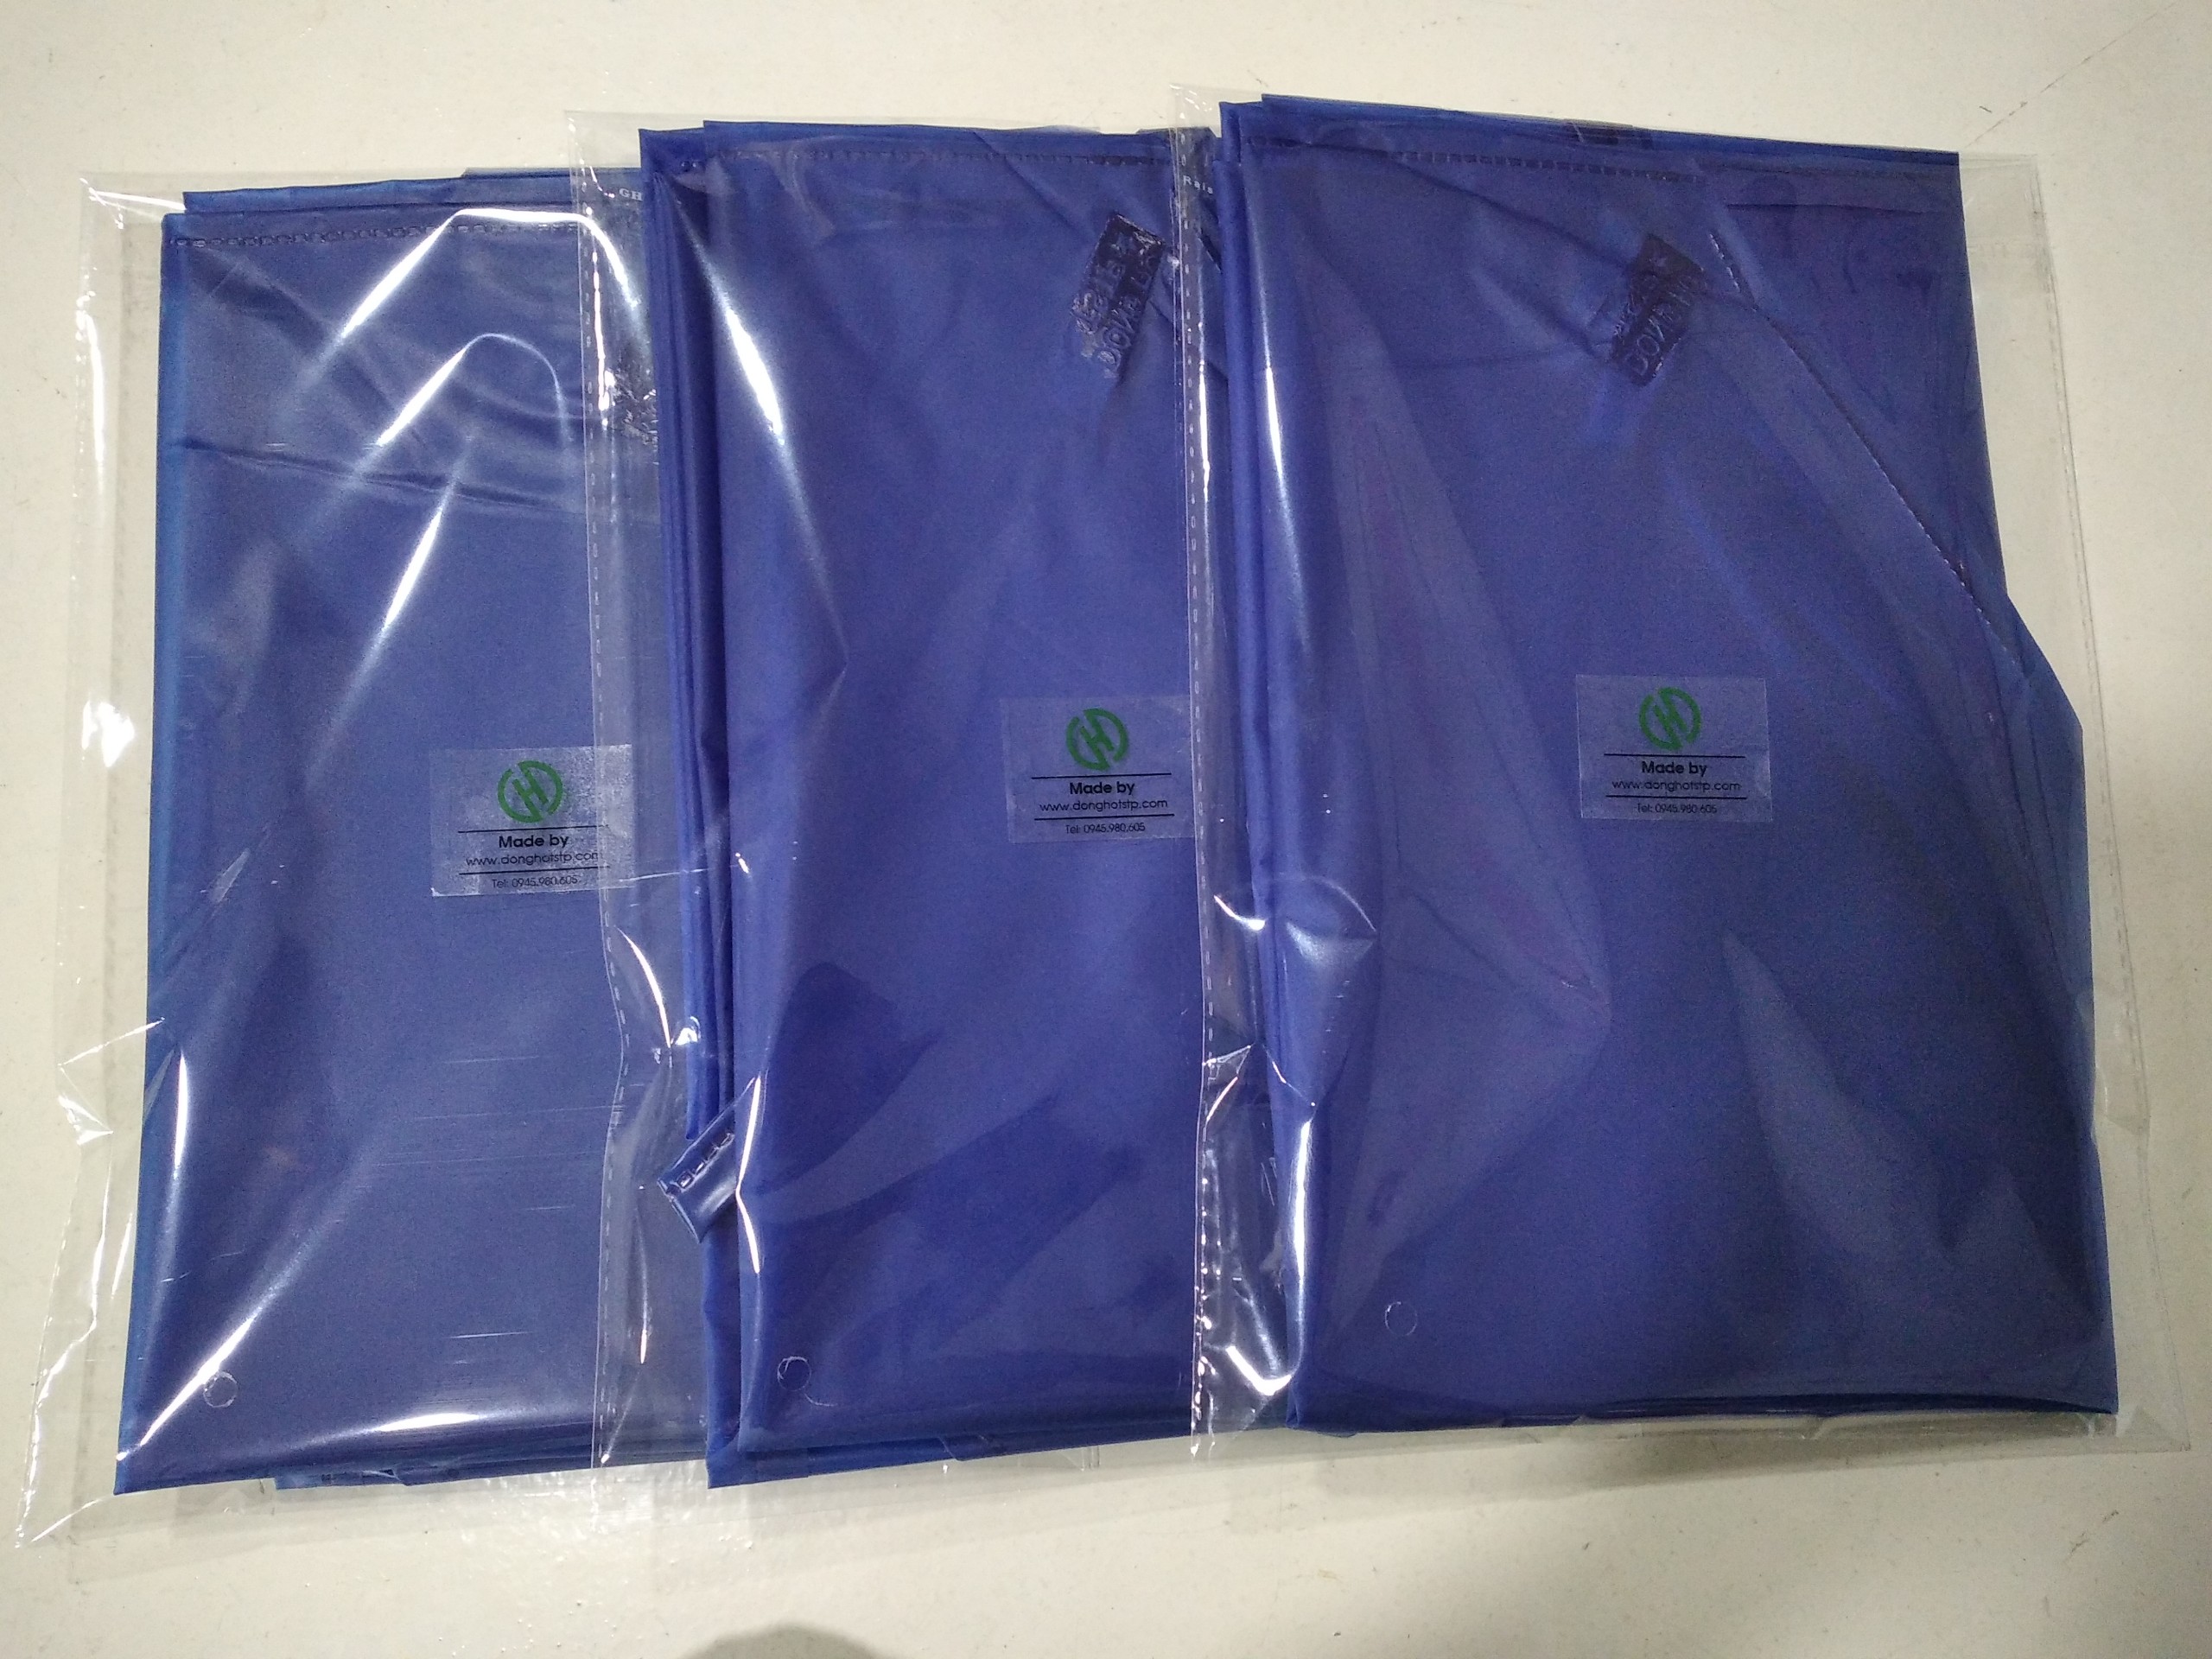 Combo 10 cái tạp dề nhựa chống nước - Tạp dề nhà bếp màu xanh dương